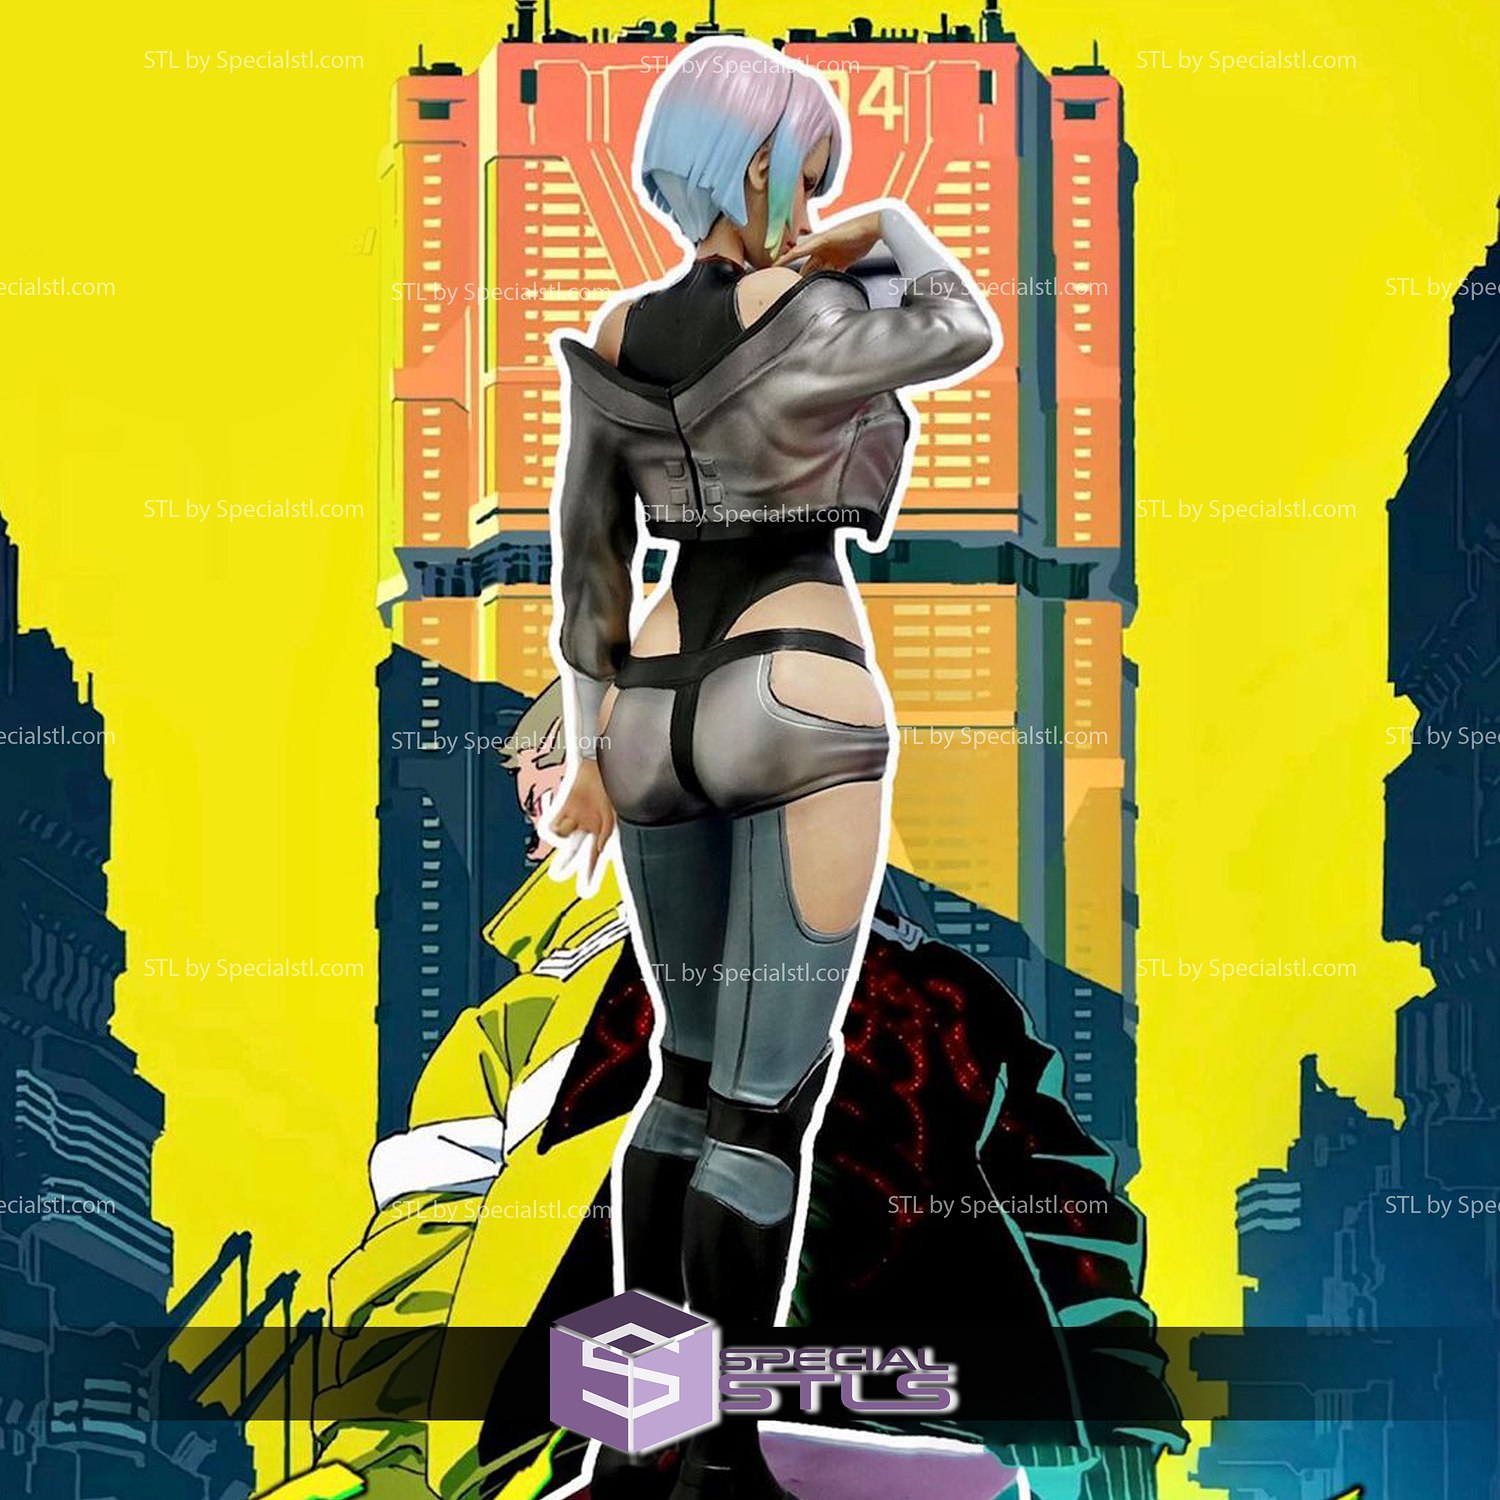 Lucy (Cyberpunk: Edgerunners)  Cyberpunk anime, Cyberpunk, Anime